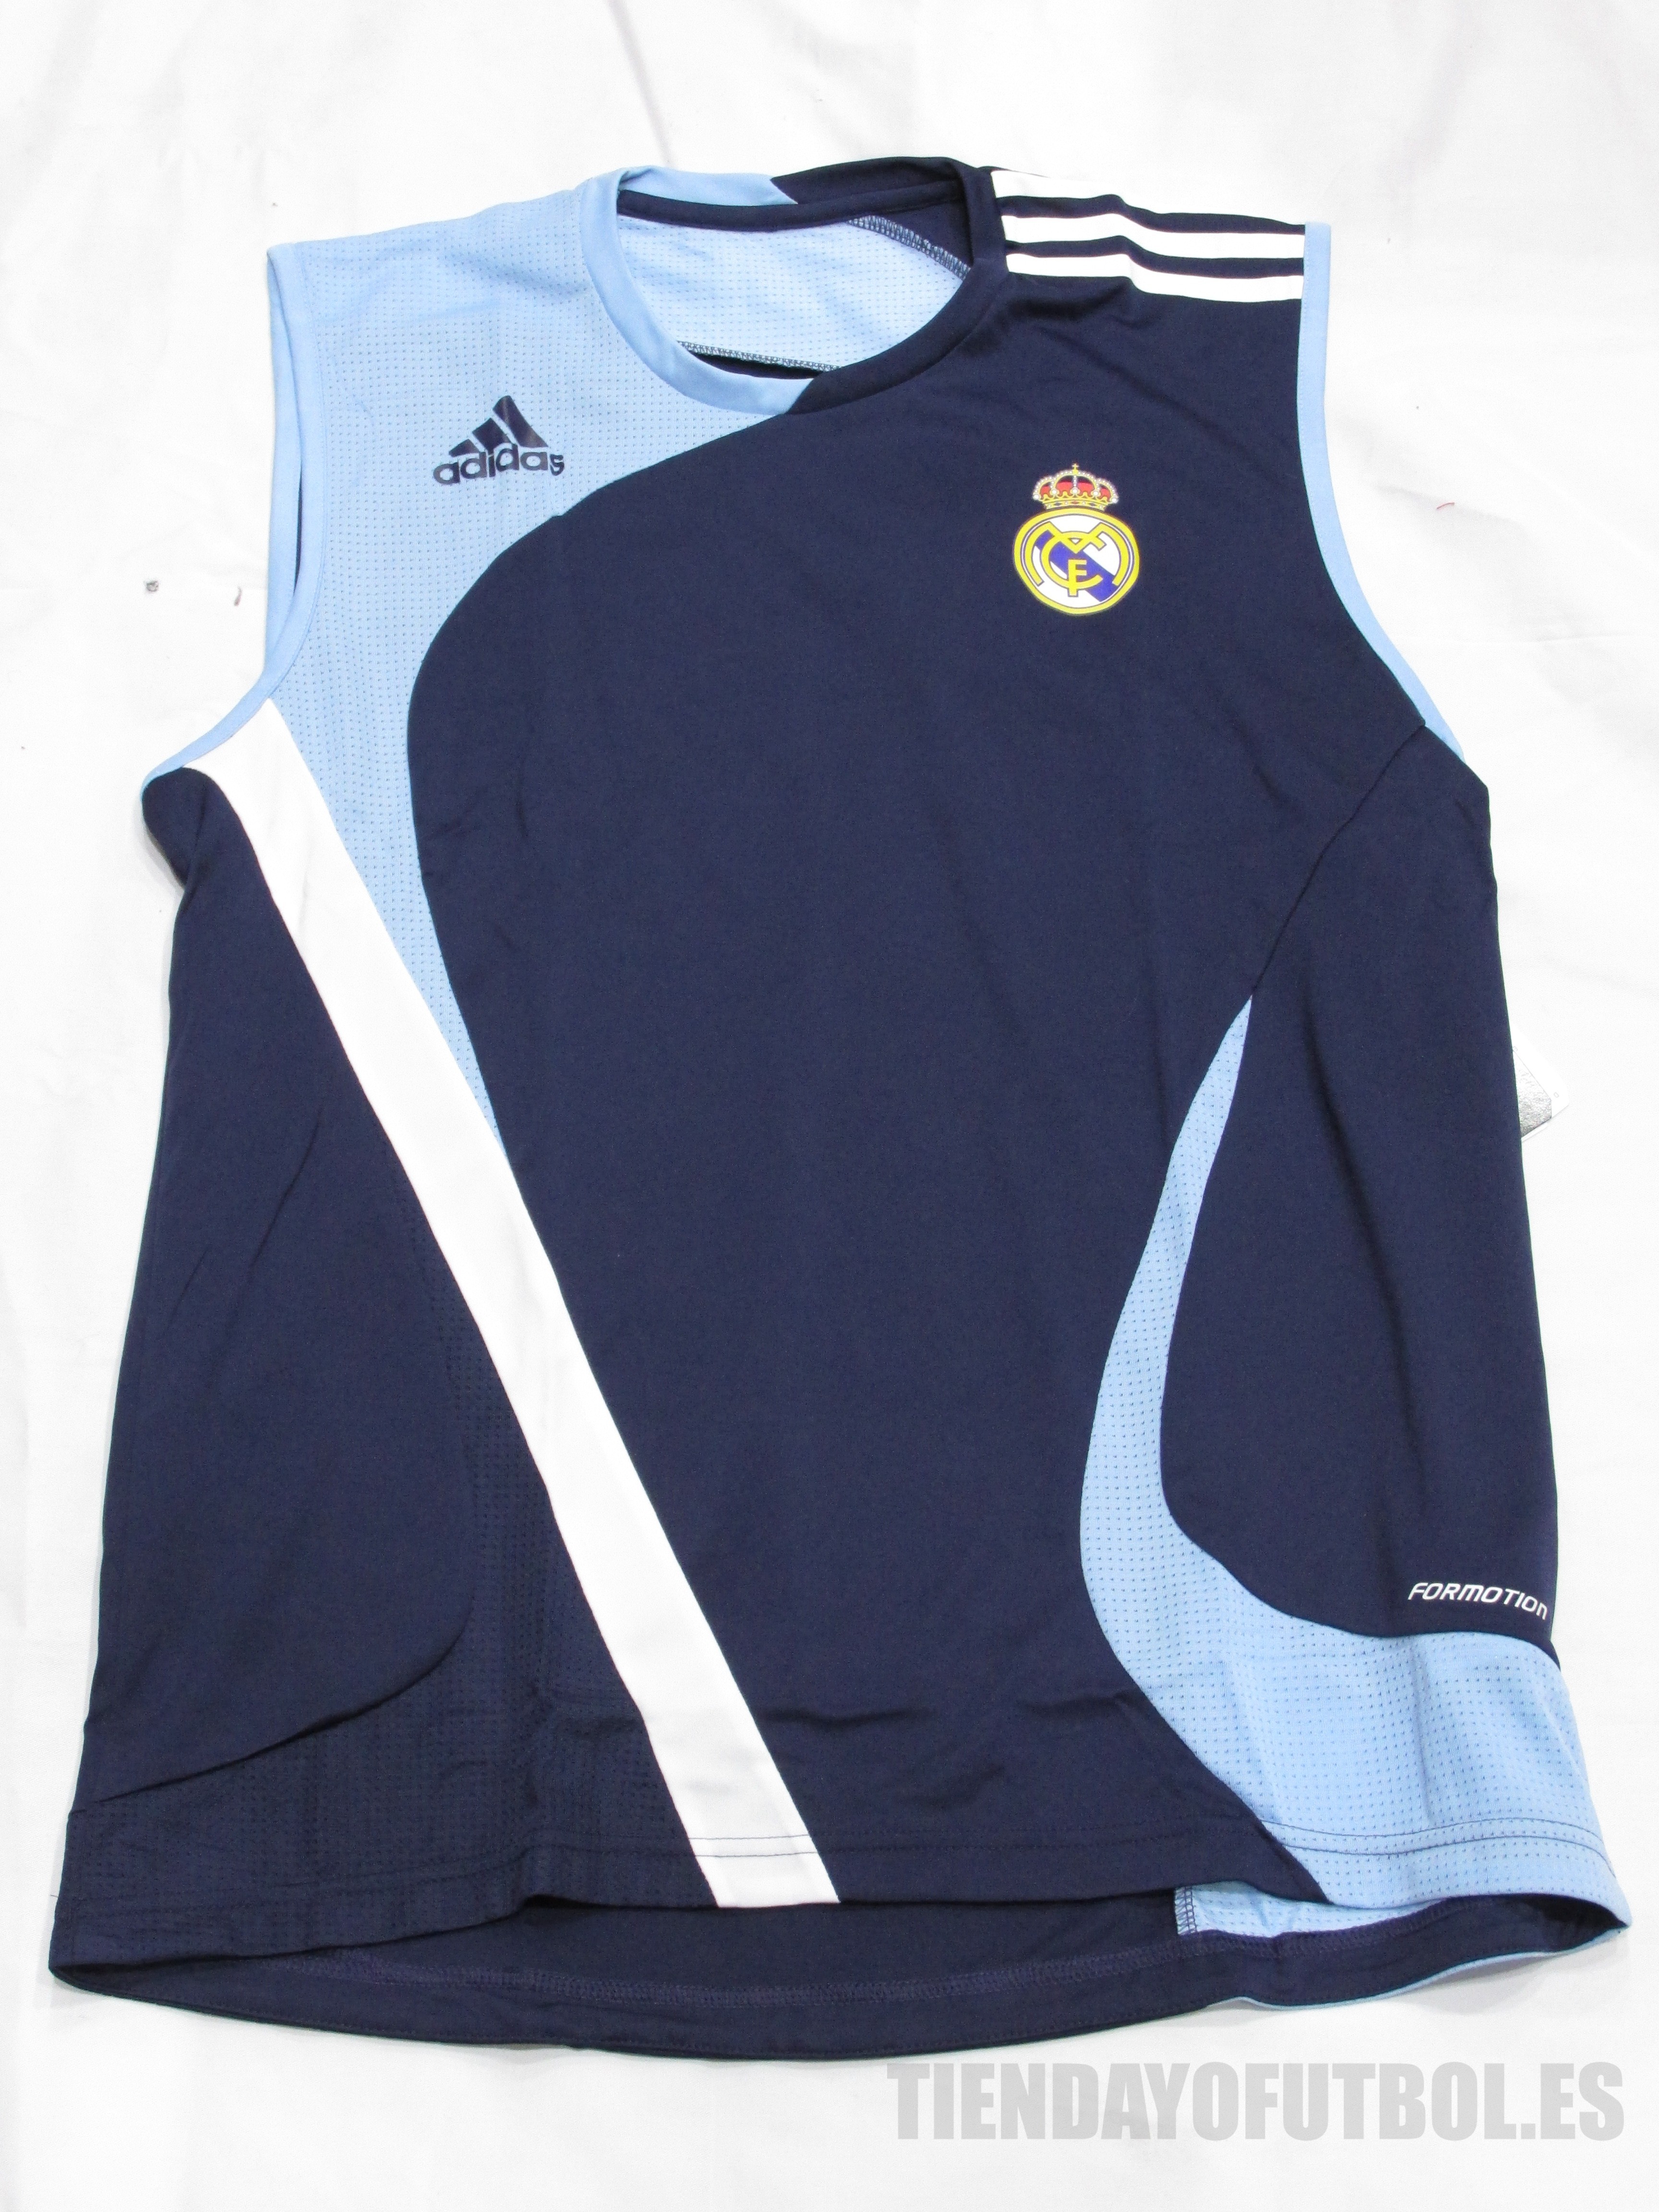 Camiseta oficial Entrenamiento sin manga Real Madrid | entrenamiento Real | Real  Madrid camiseta Entreno azul